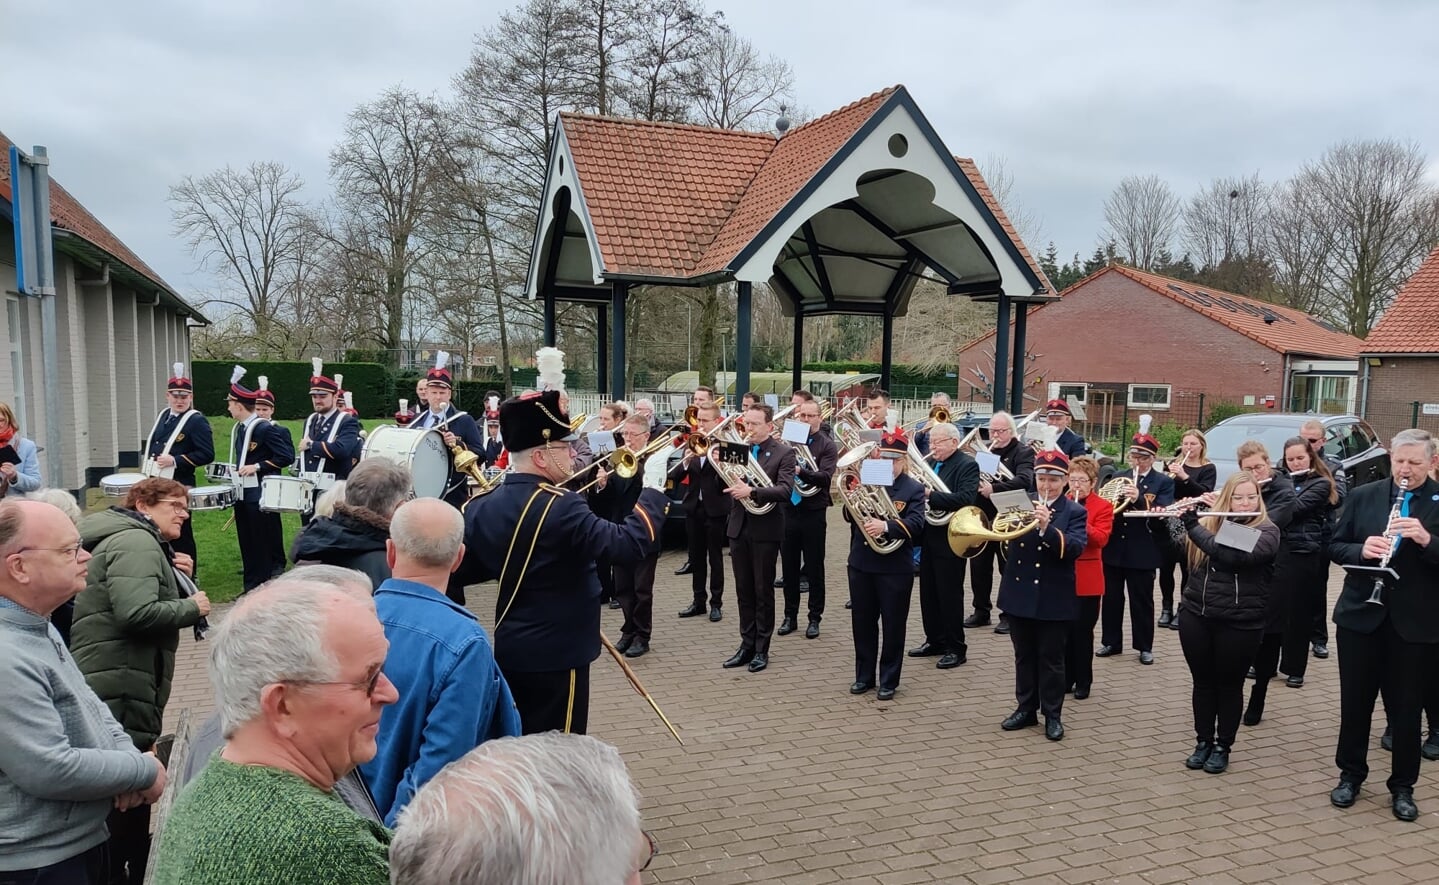 Gezamenlijk brachten de muziekkorpsen uit Boxtel, Liempde en Esch zondag een afscheidsaubade aan de fanfare in Lennisheuvel.